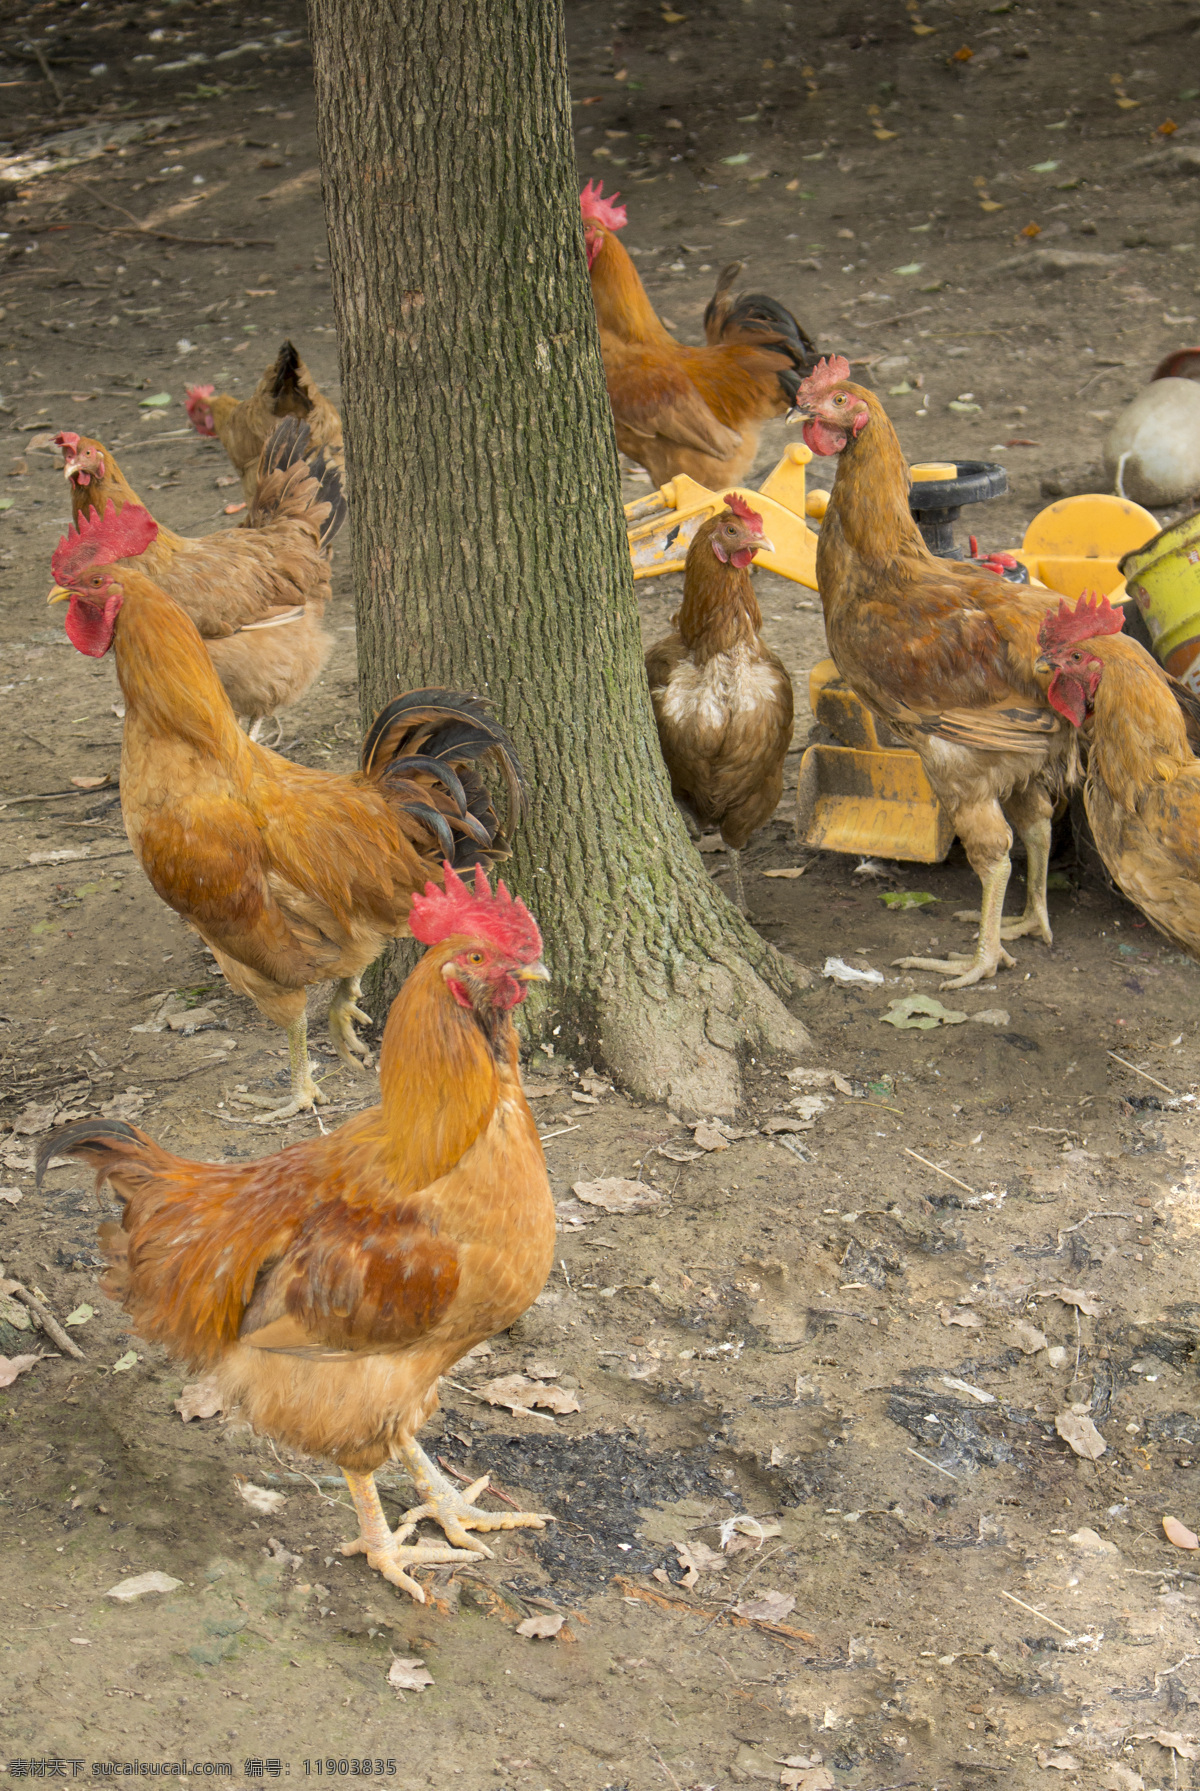 散养鸡 土鸡 生态鸡 公鸡母鸡 群鸡 原生态鸡 摄影专辑 生物世界 家禽家畜